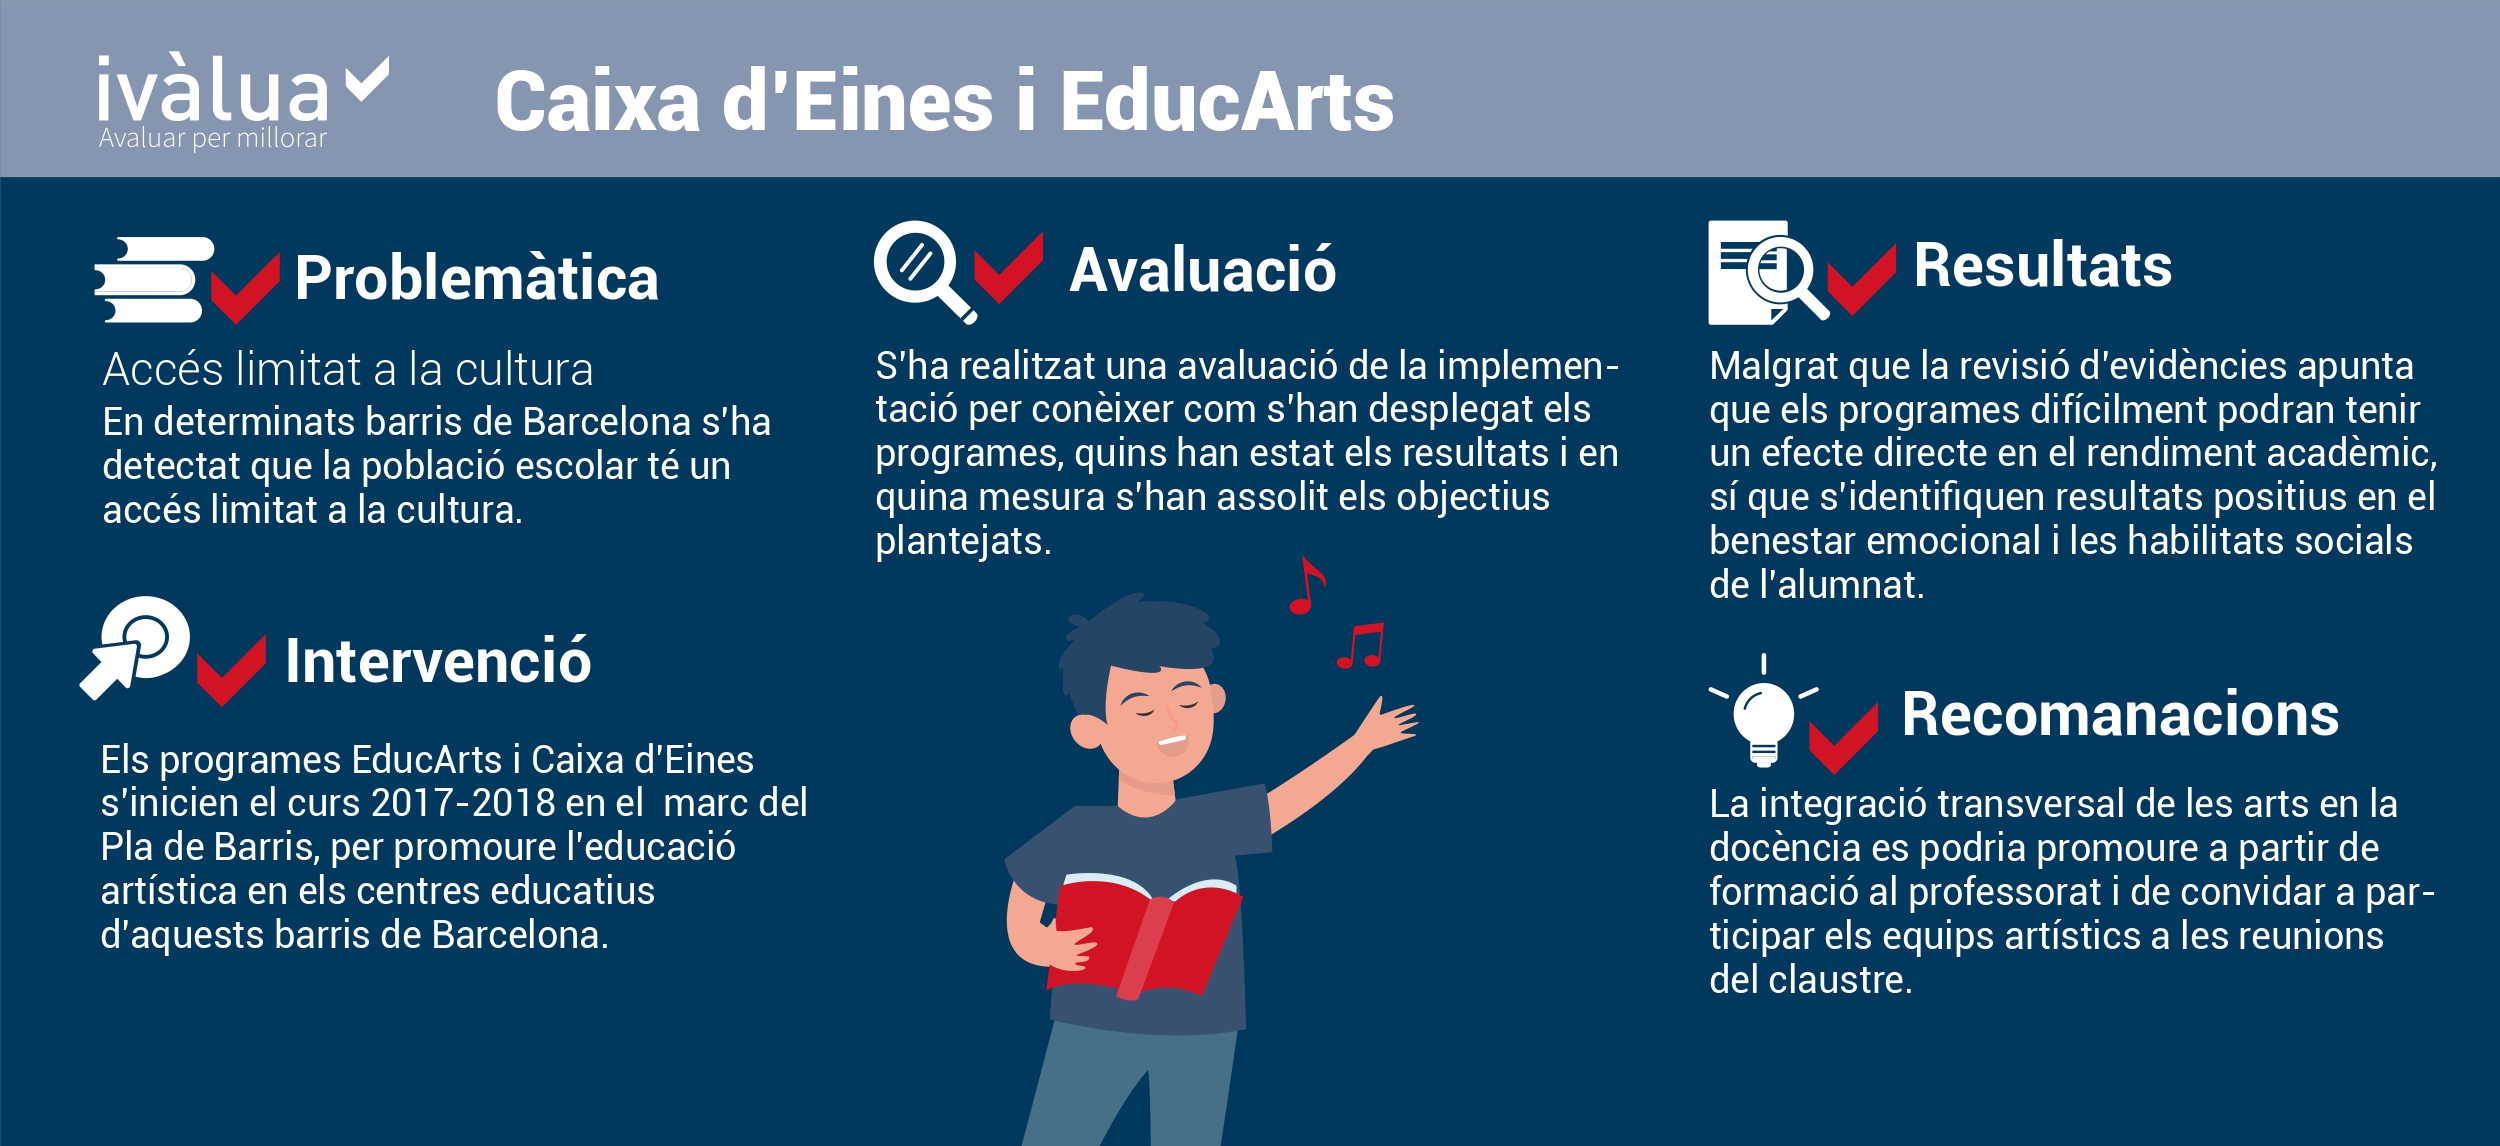 Infografia Caixa d’Eines i EducArts